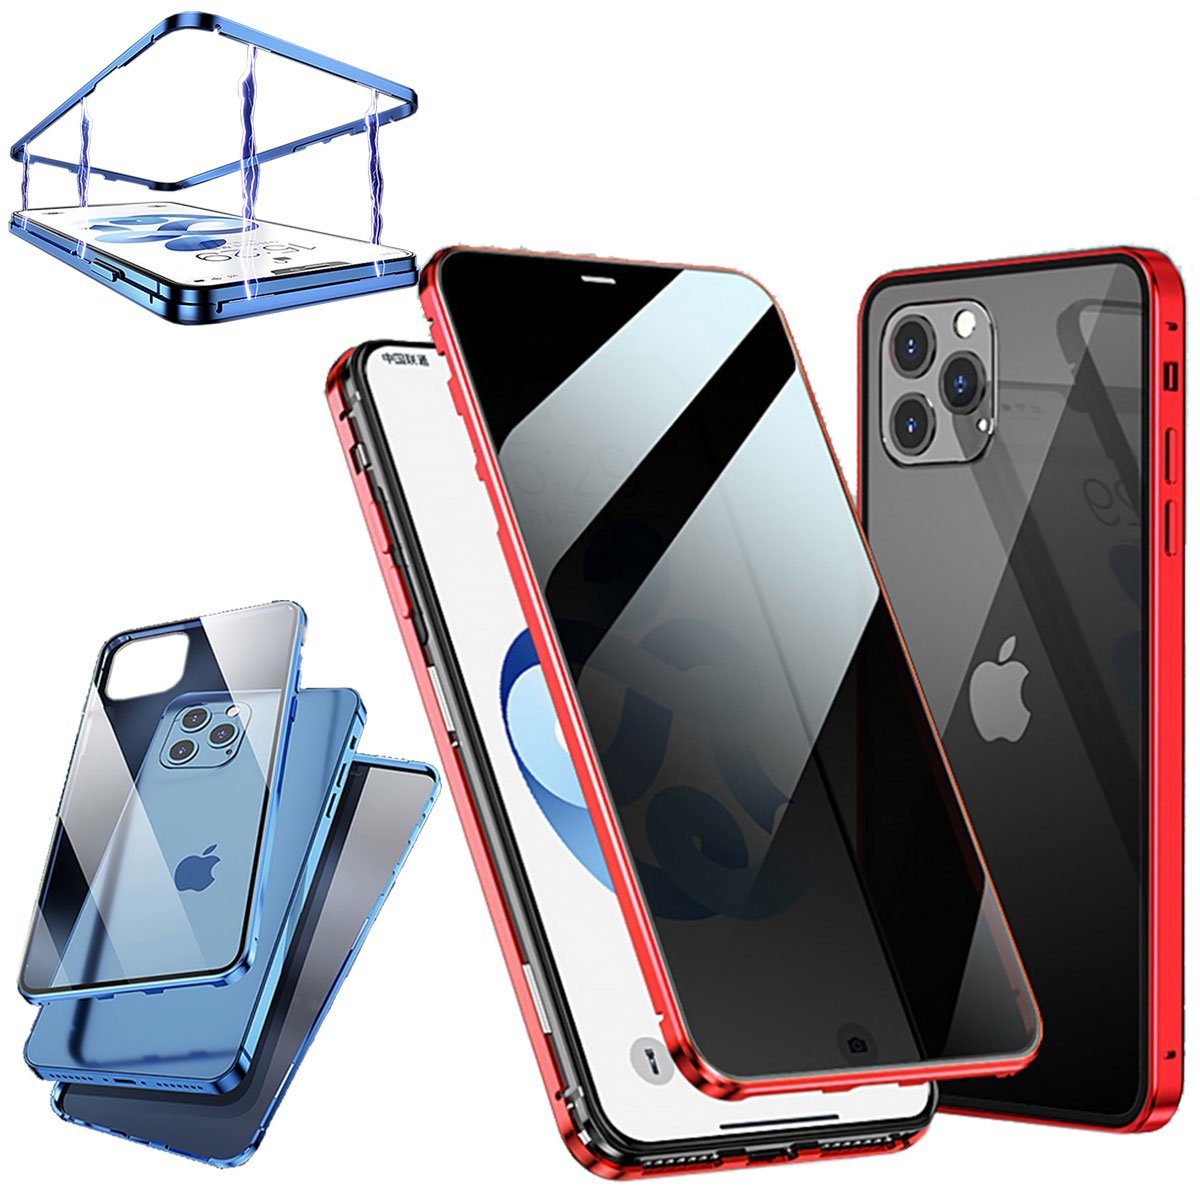 Wigento Handyhülle »Beidseitiger 360 Grad Privacy Magnet / Glas Case Bumper  für Apple iPhone 12 Mini 5.4 Zoll Handy Tasche Case Hülle Cover New Style«  online kaufen | OTTO